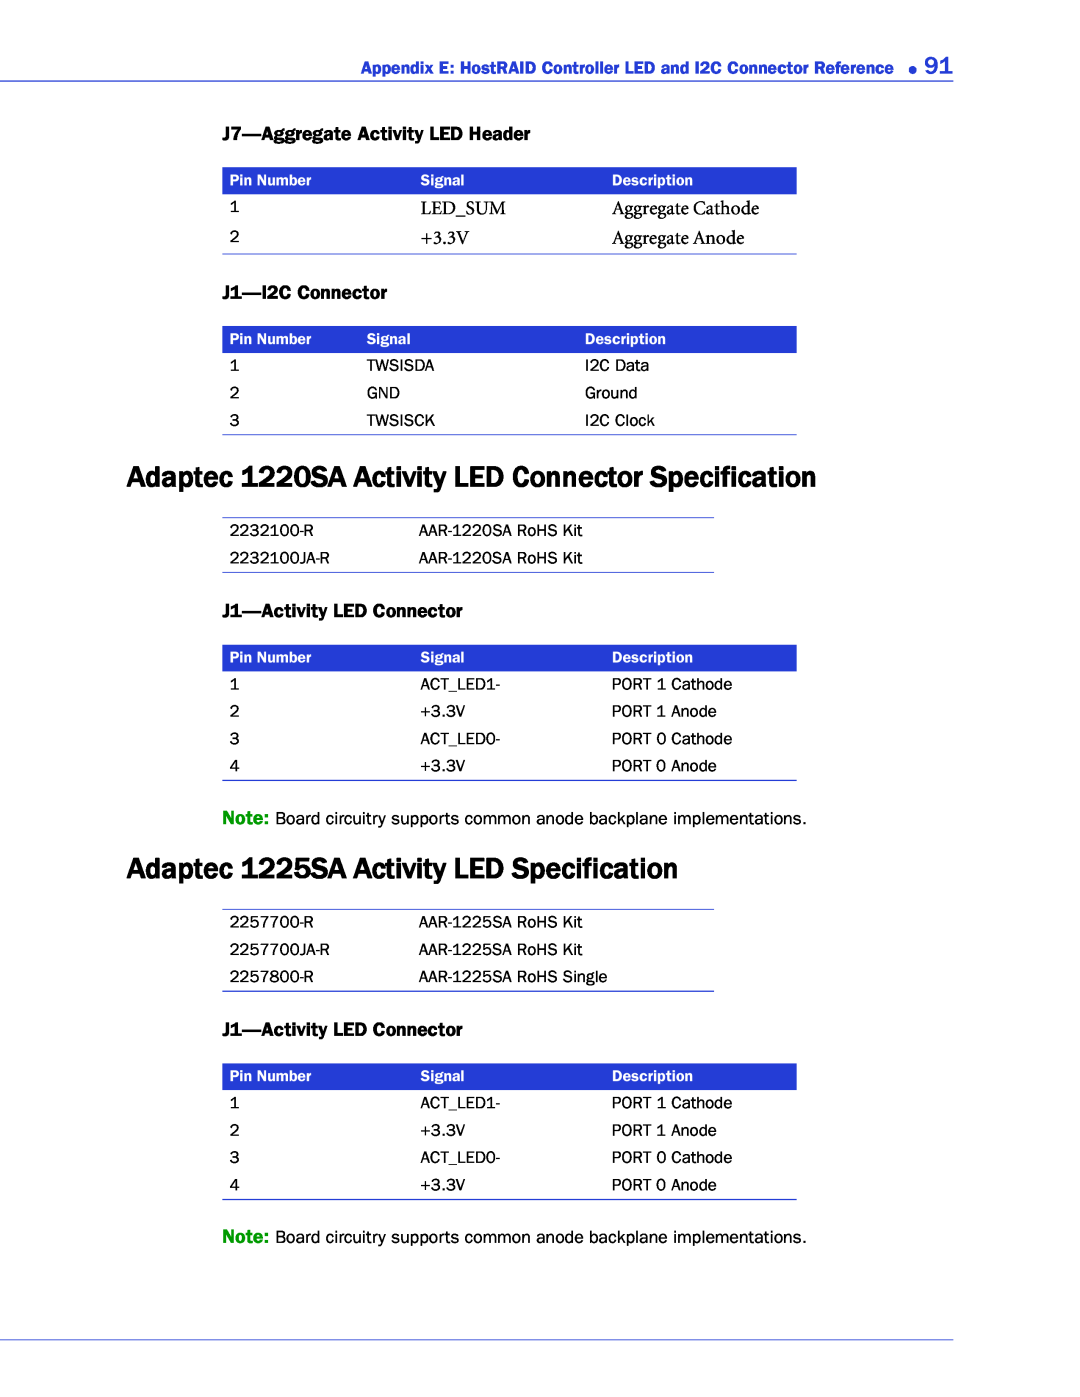 Adaptec 1430SA, 58300, 44300 Adaptec 1220SA Activity LED Connector Specification, Adaptec 1225SA Activity LED Specification 